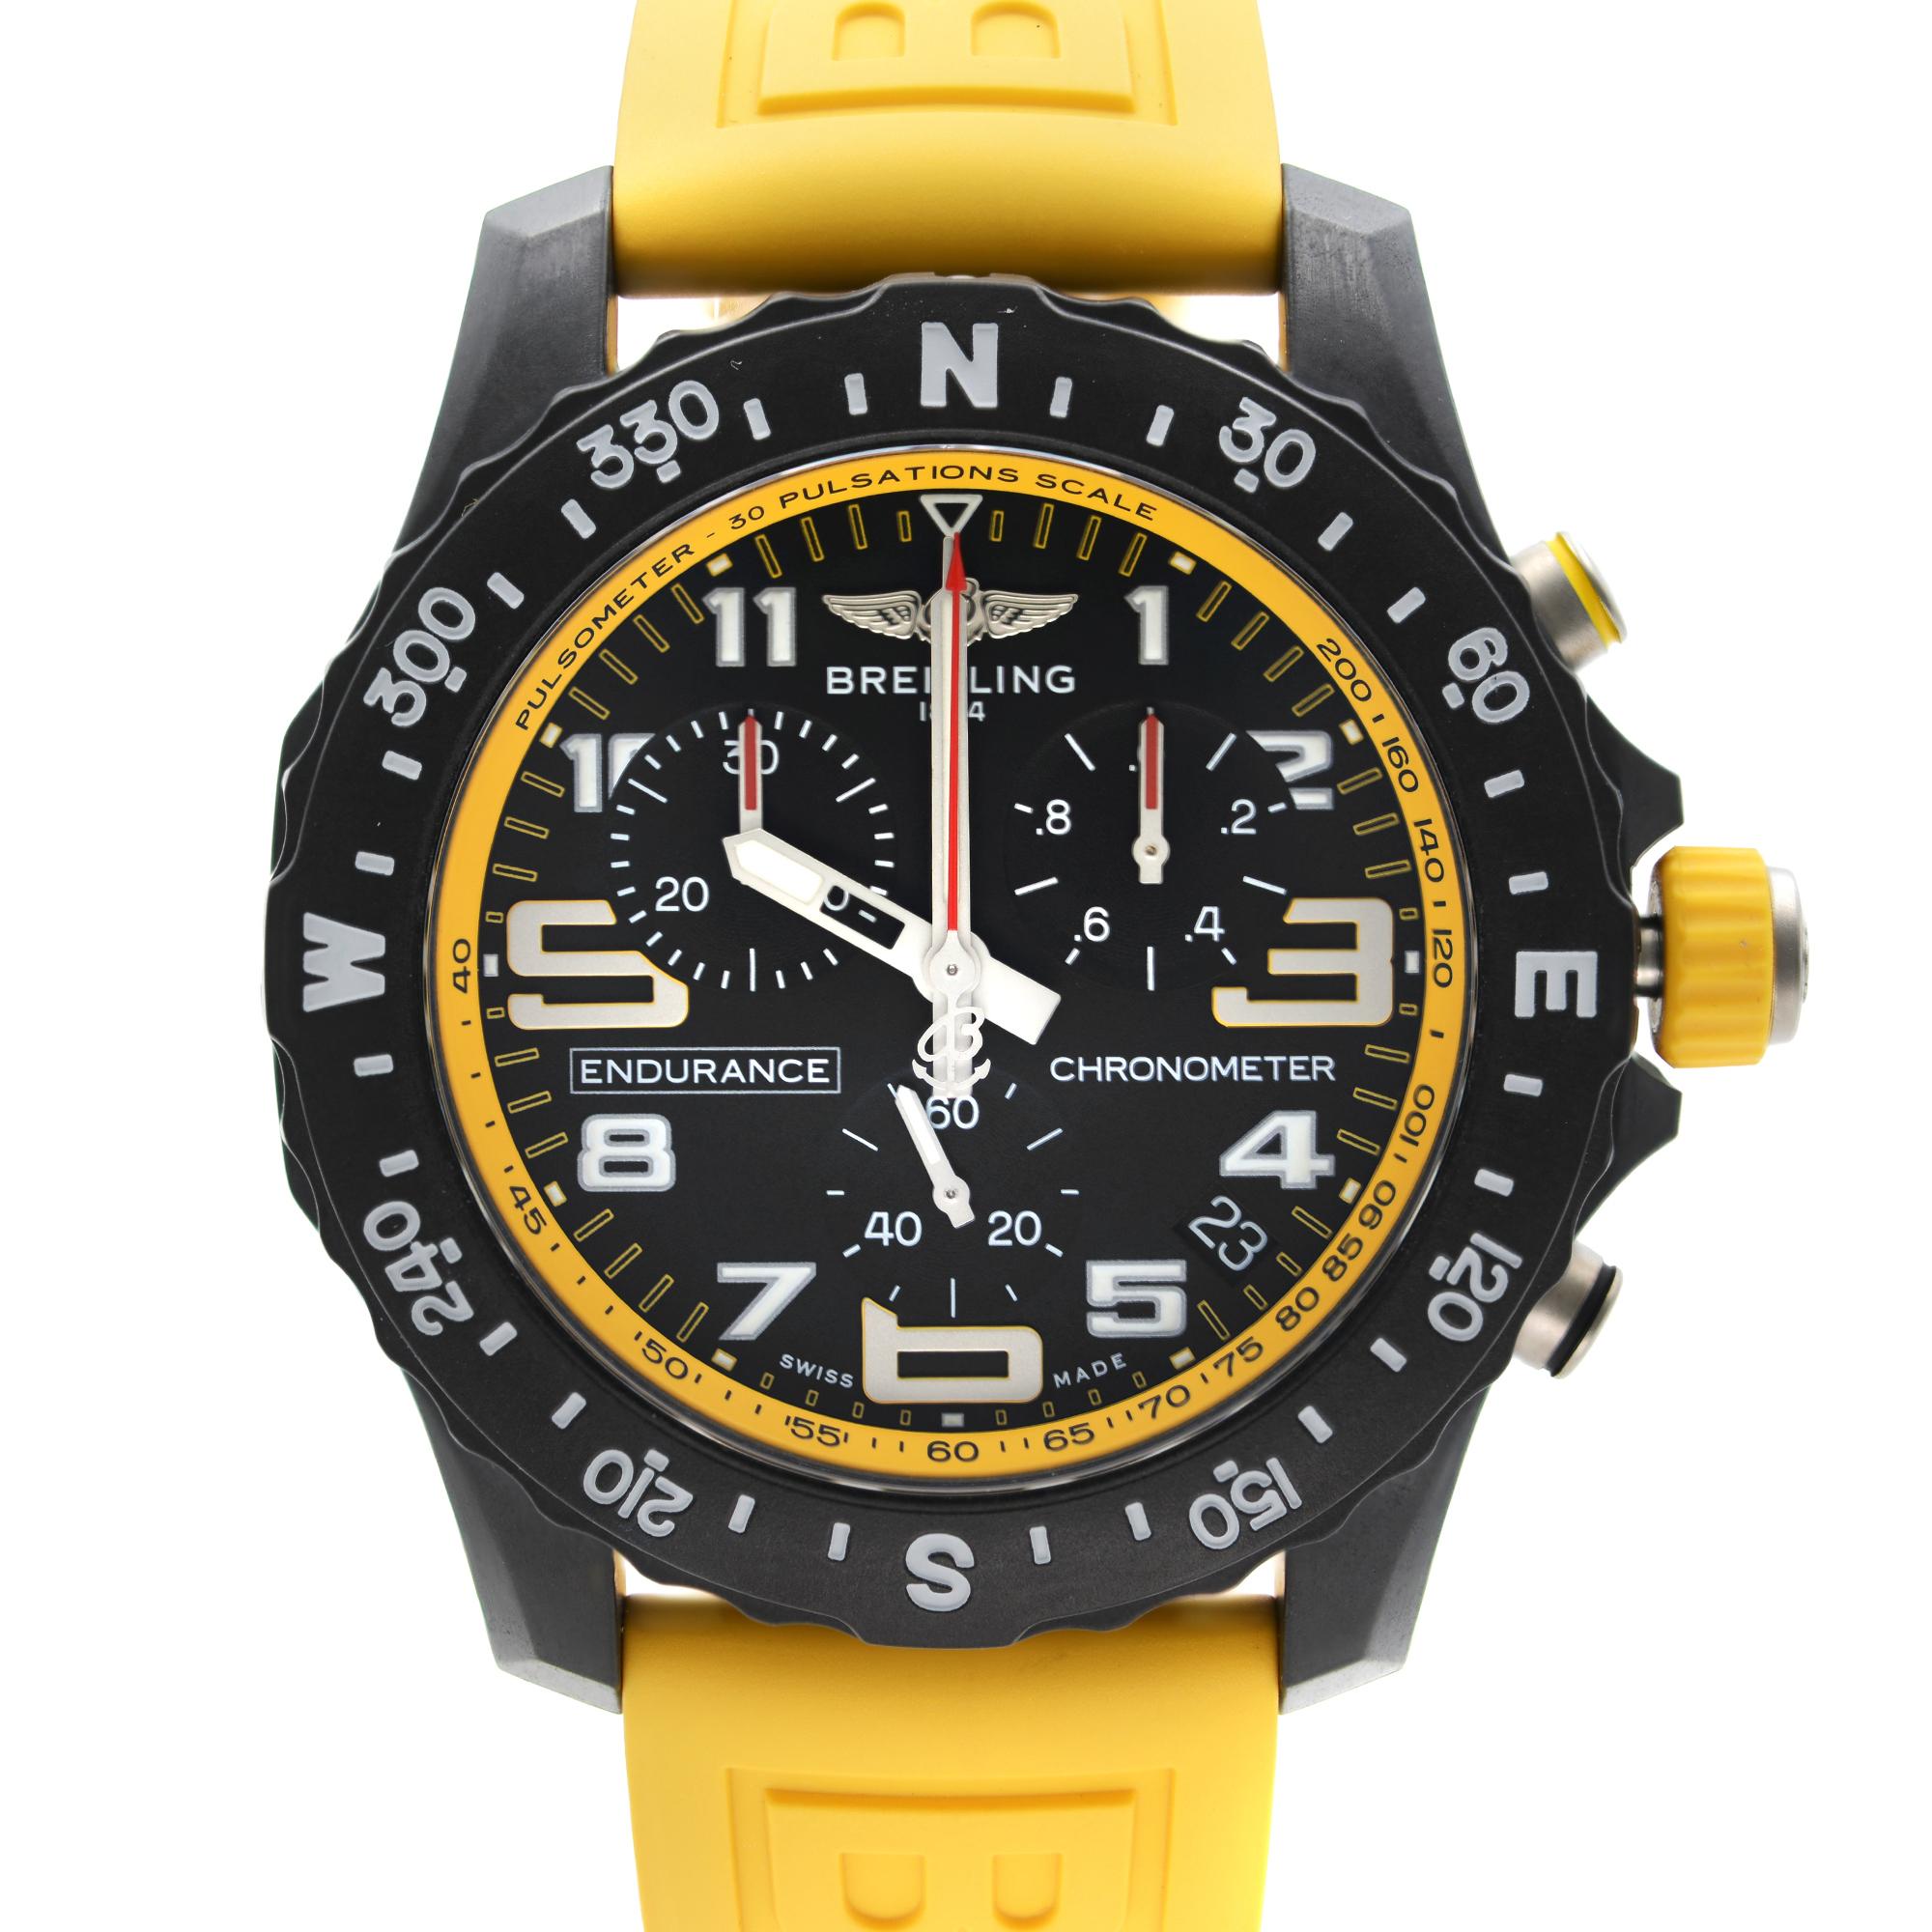 Ungetragen mit Original Rückenaufkleber Breitling Endurance Pro Breitlight Yellow Straps Black Dial Quartz Men's Watch X82310A41B1S1. Dieser schöne Zeitmesser verfügt über: Schwarz Composite-Gehäuse mit einem gelben Kautschukband, schwarz